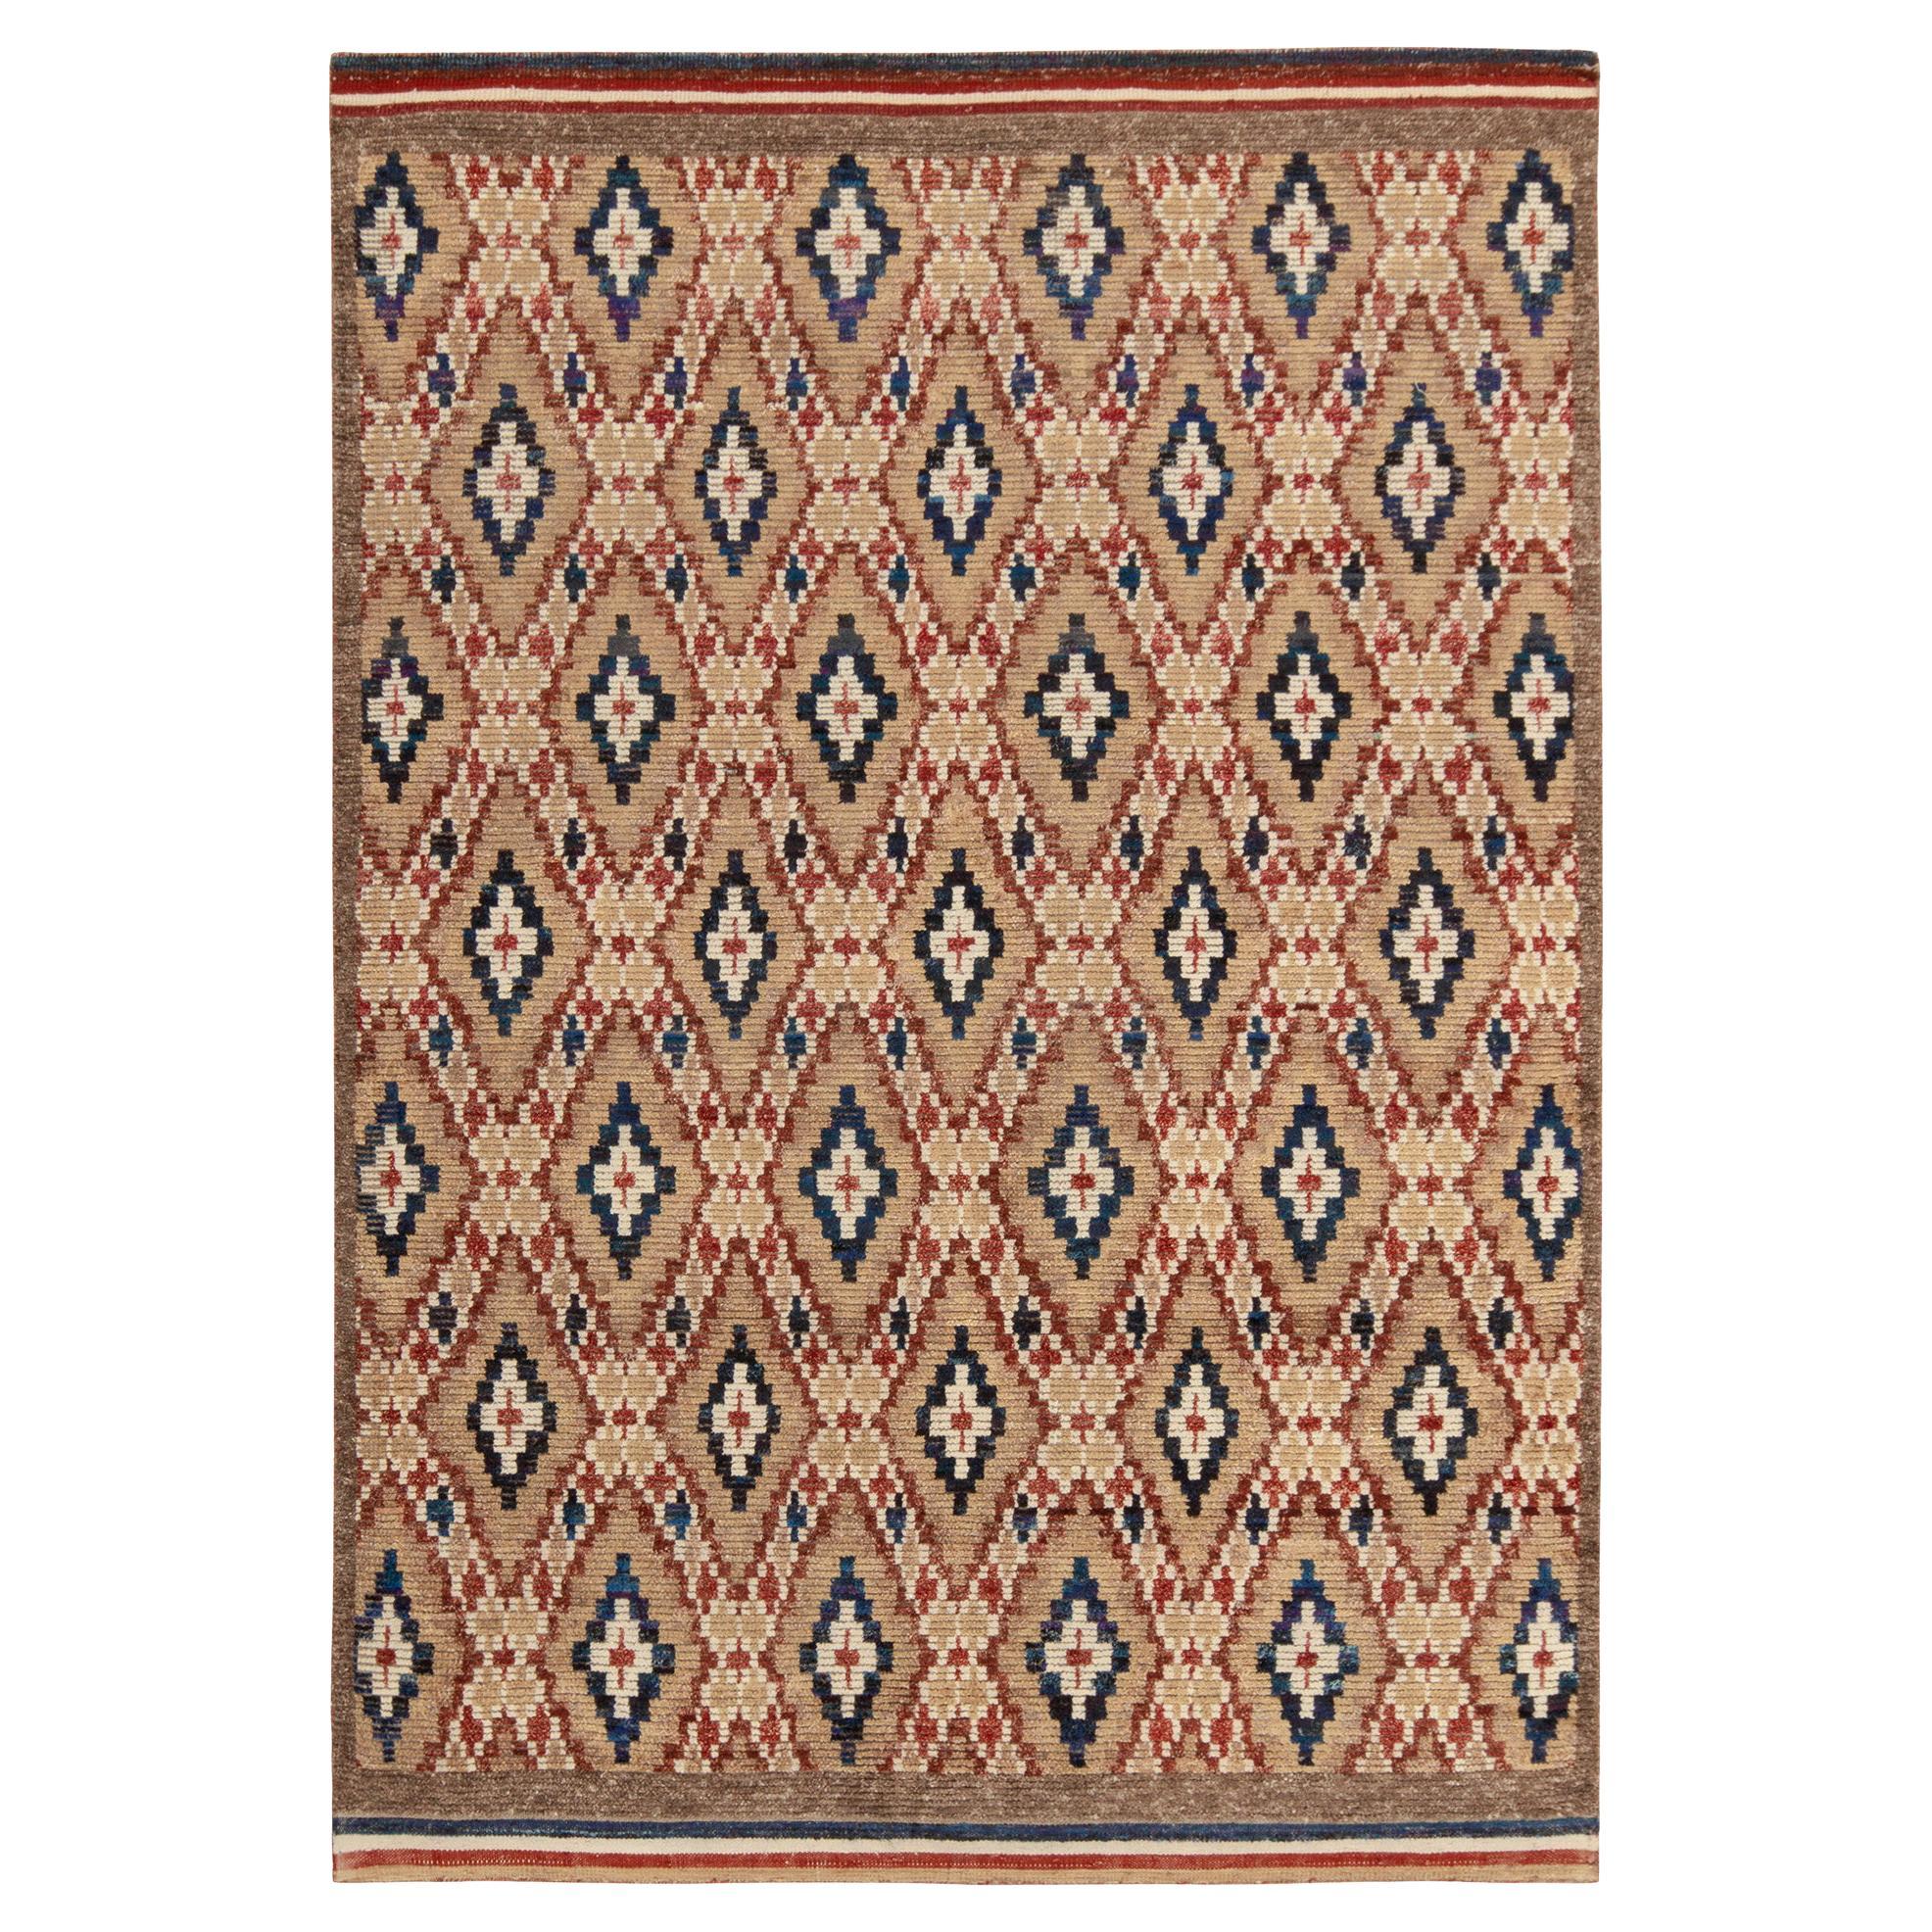 Rug & Kilim's Moroccan Style Rug in Beige-Brown, Red and Blue Diamond Patterns (tapis de style marocain à motifs de diamants beige, marron, rouge et bleu) en vente